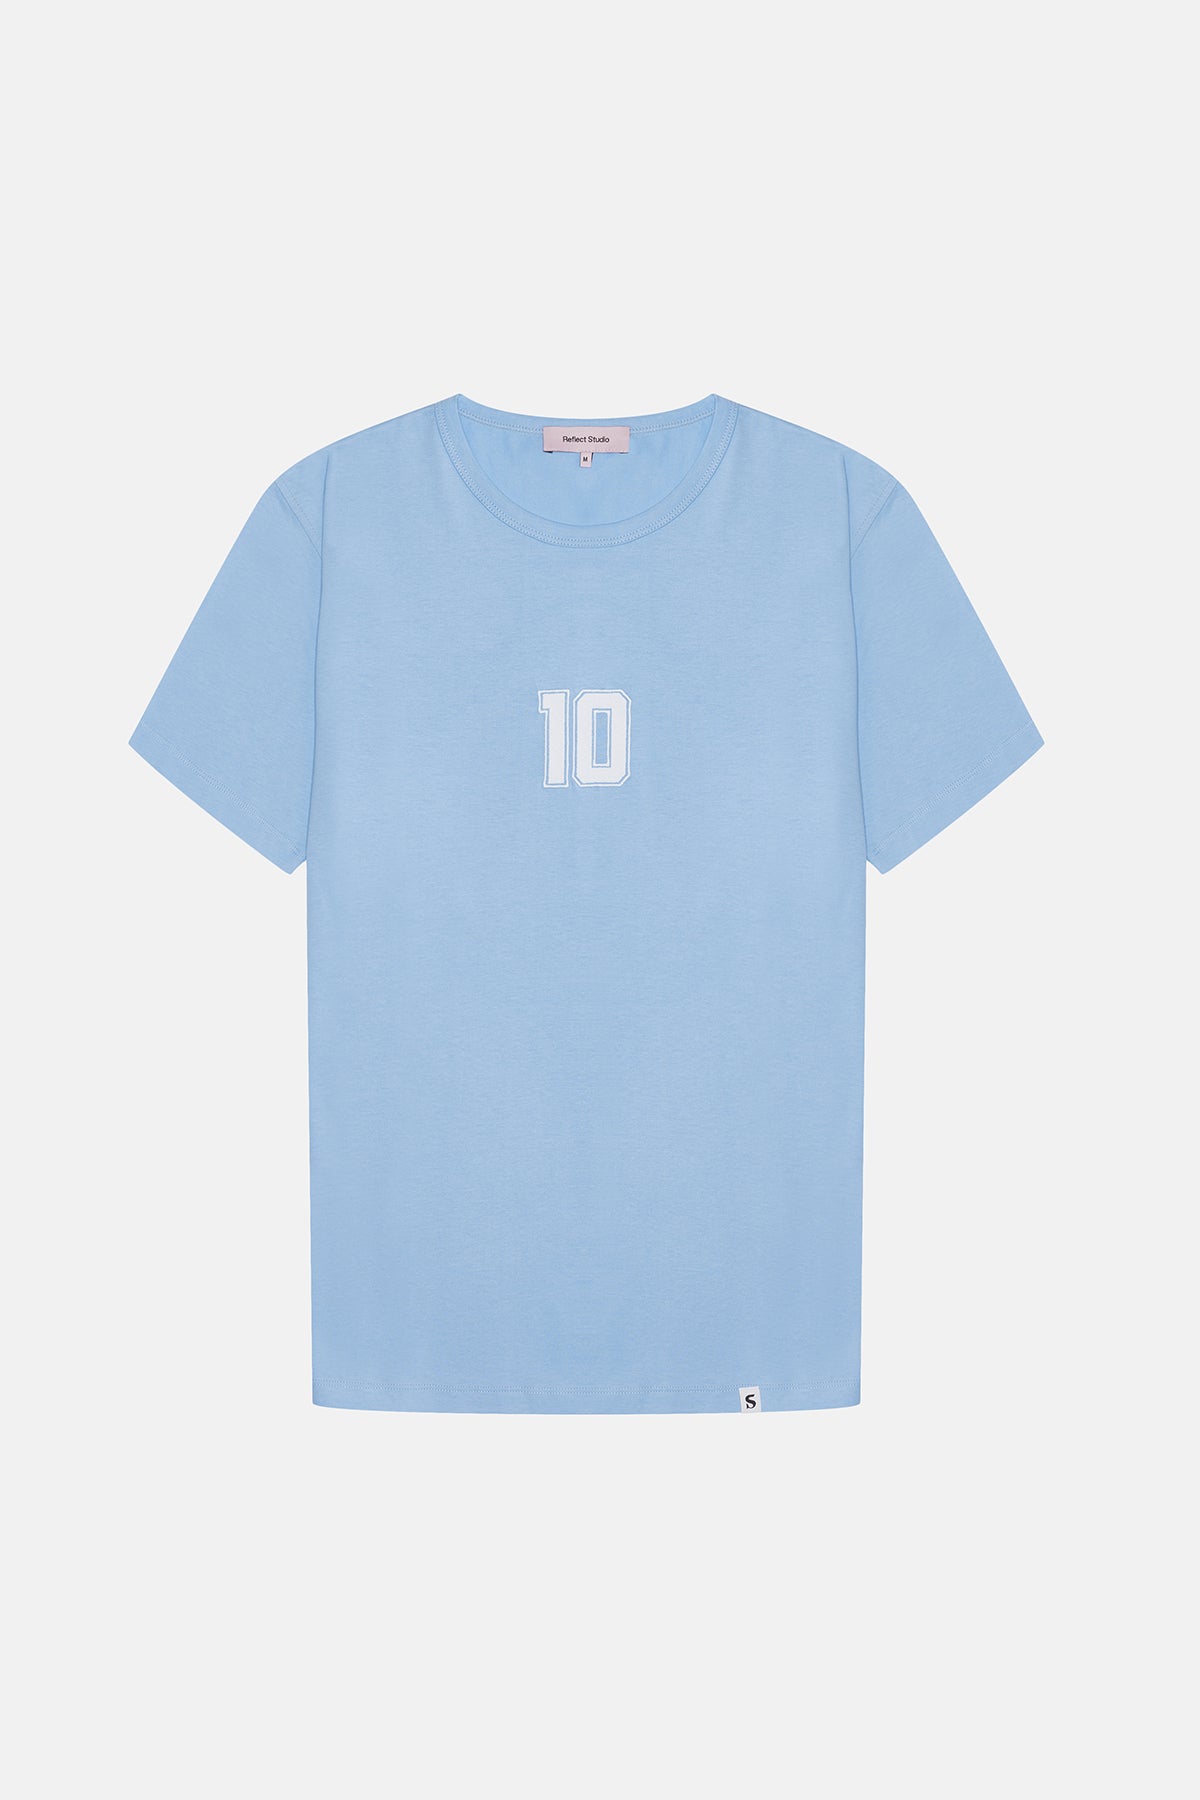 Argentina 10 Supreme T-Shirt - Mavi